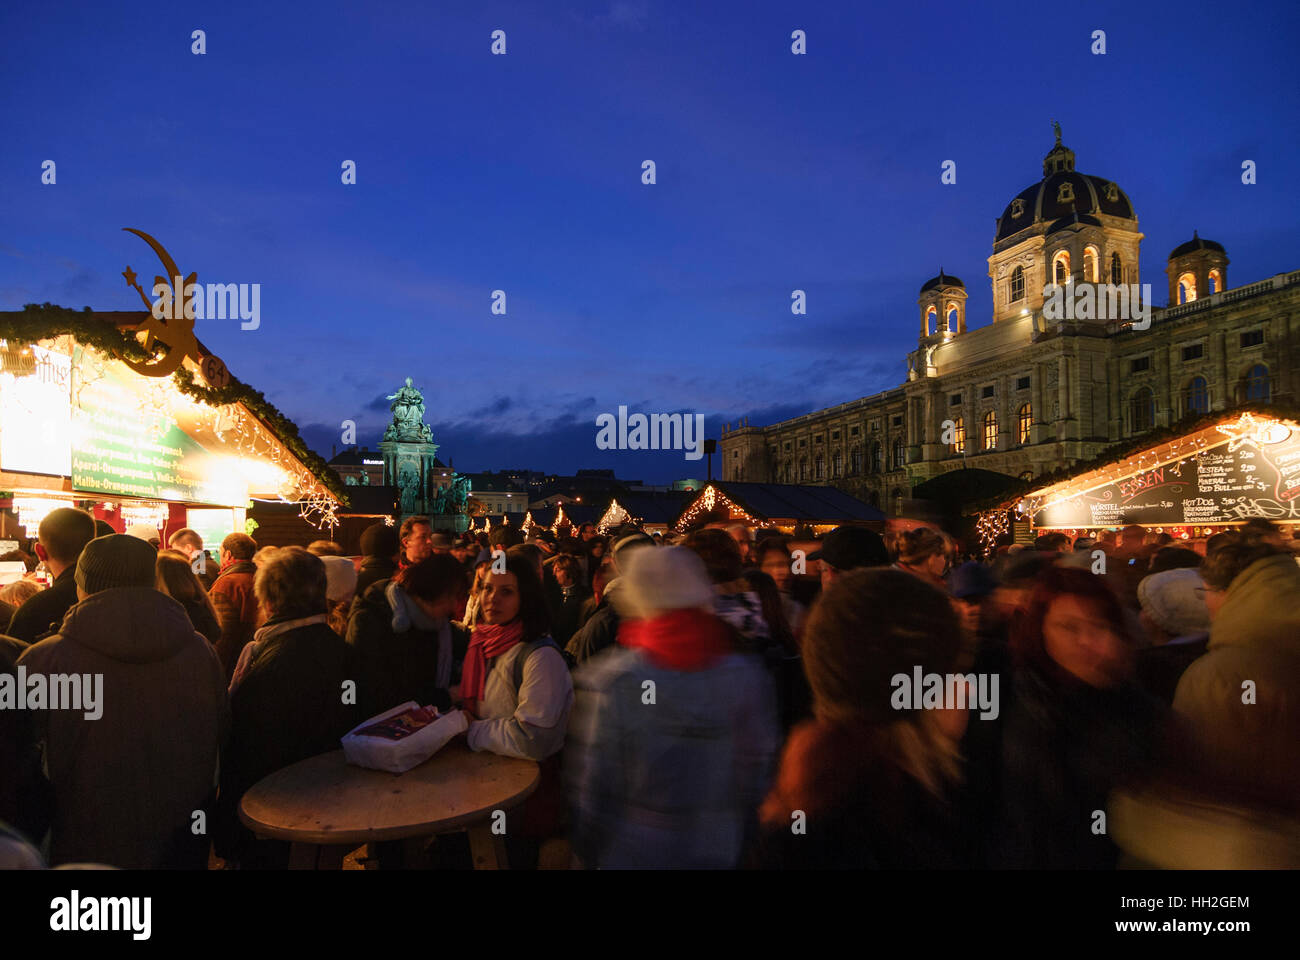 Wien, Wien: Weihnachten Markt Christkindlmarkt auf der Maria-Theresien-Platz (Maria-Theresien-Platz), im Hintergrund das Museum of Natural History ein Stockfoto